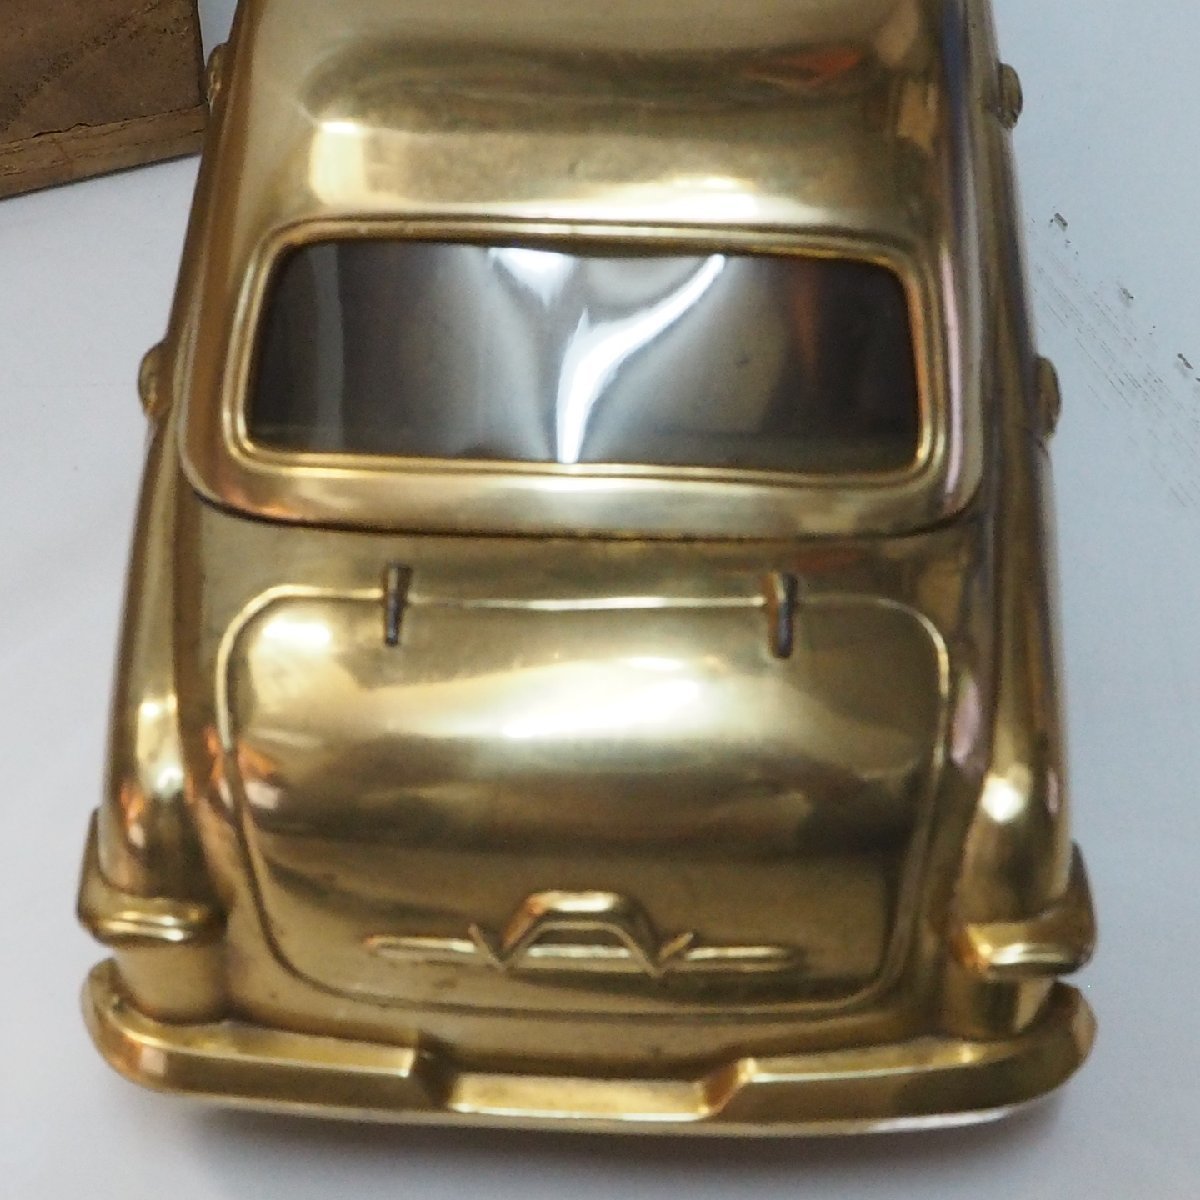  дилер [ первое поколение Toyopet Corona TOYOPET CORONA] миниатюра автомобиль сигарета кейс металлический сигара кейс пепельница TOYOTA Toyota [ дерево с ящиком ]0748